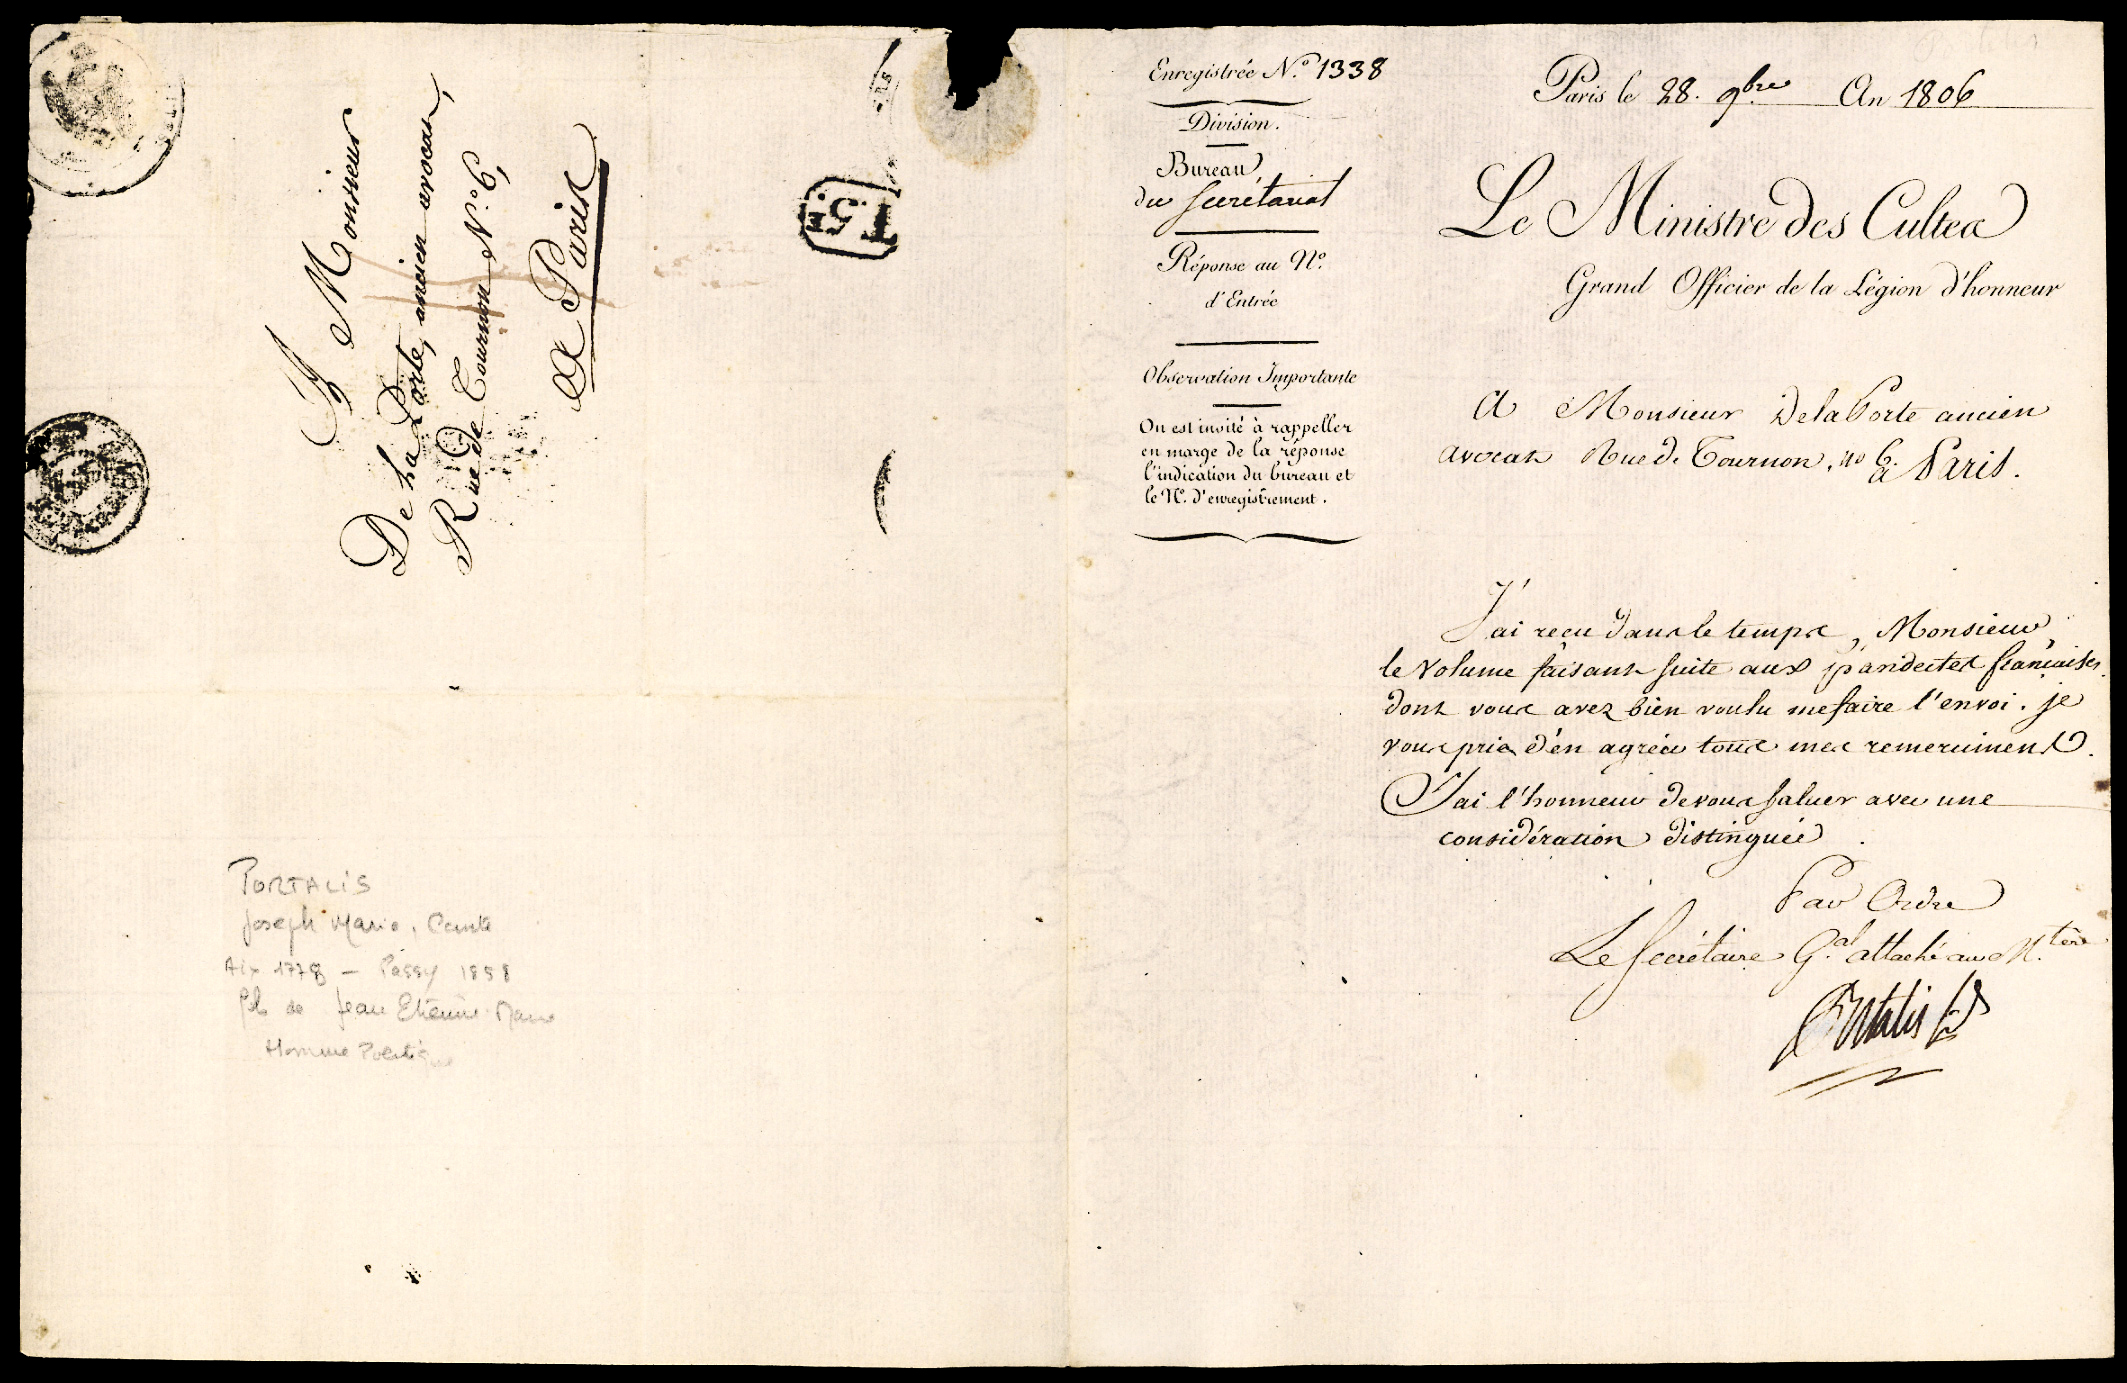 Referenz: portalis-joseph-marie-ministre-des-cultes-par-interim-en-1807-fils-du-ministre-jean-etienne-p